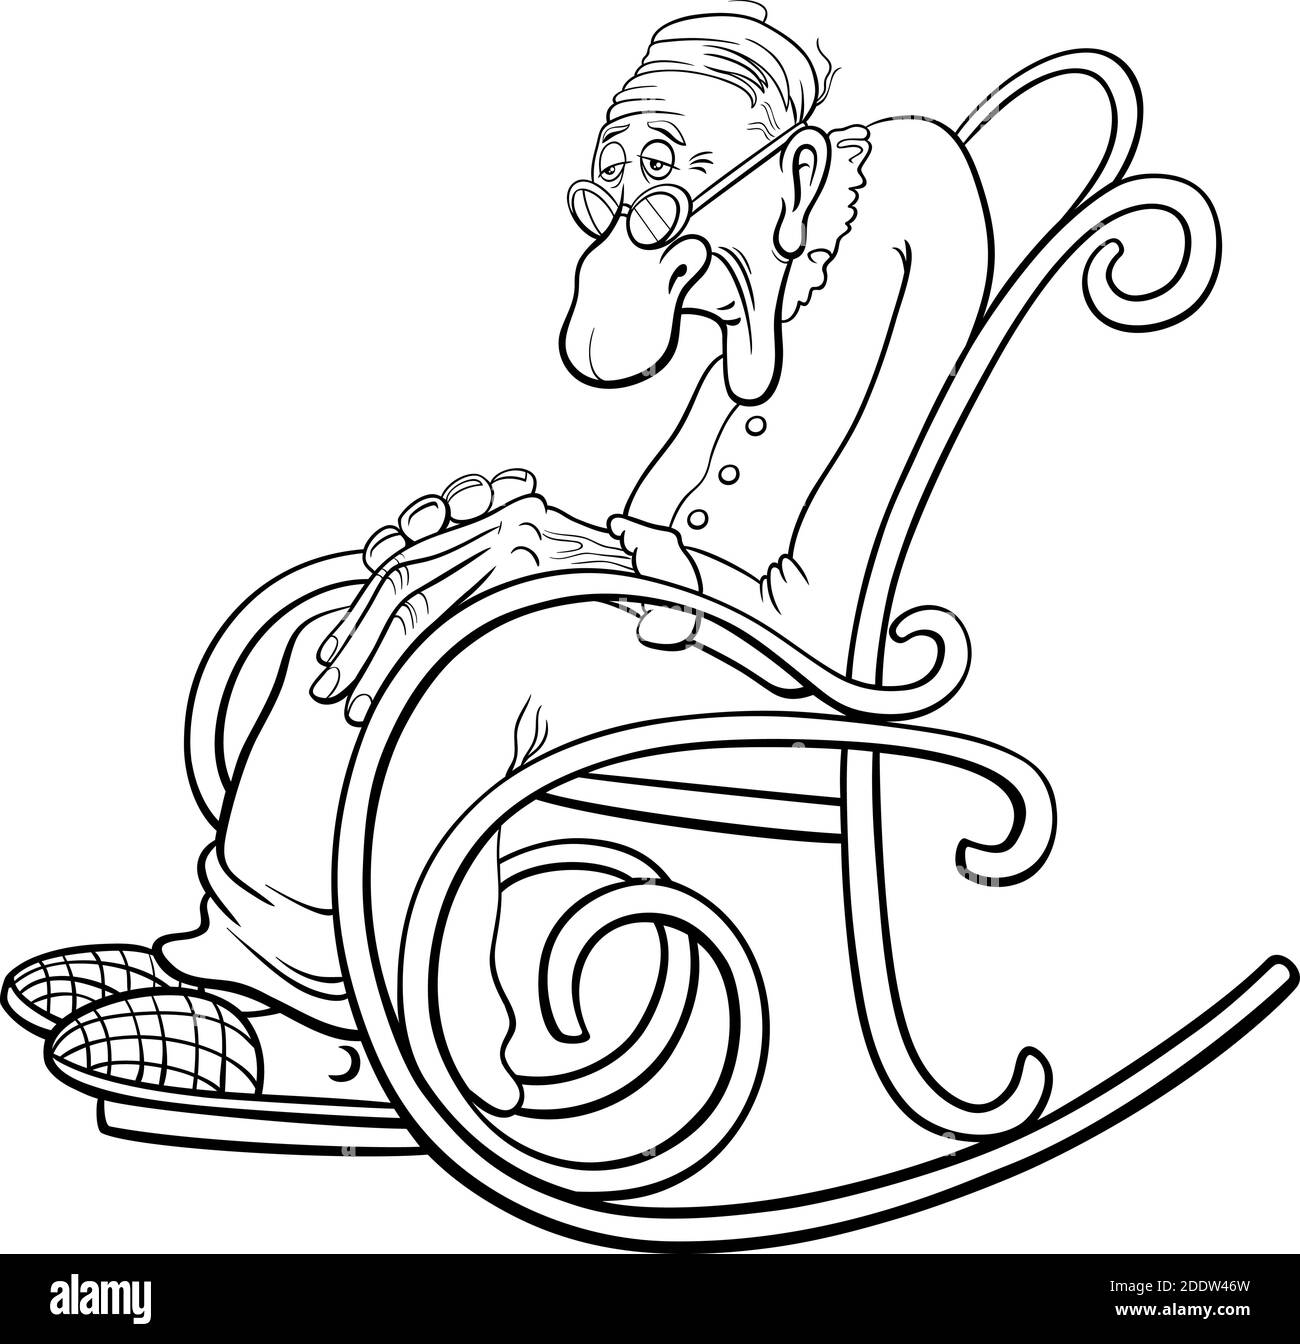 Illustration de dessin animé noir et blanc d'un homme d'âge mûr âgé ou grand-père dans la page de livre de coloriage de chaise à bascule Illustration de Vecteur